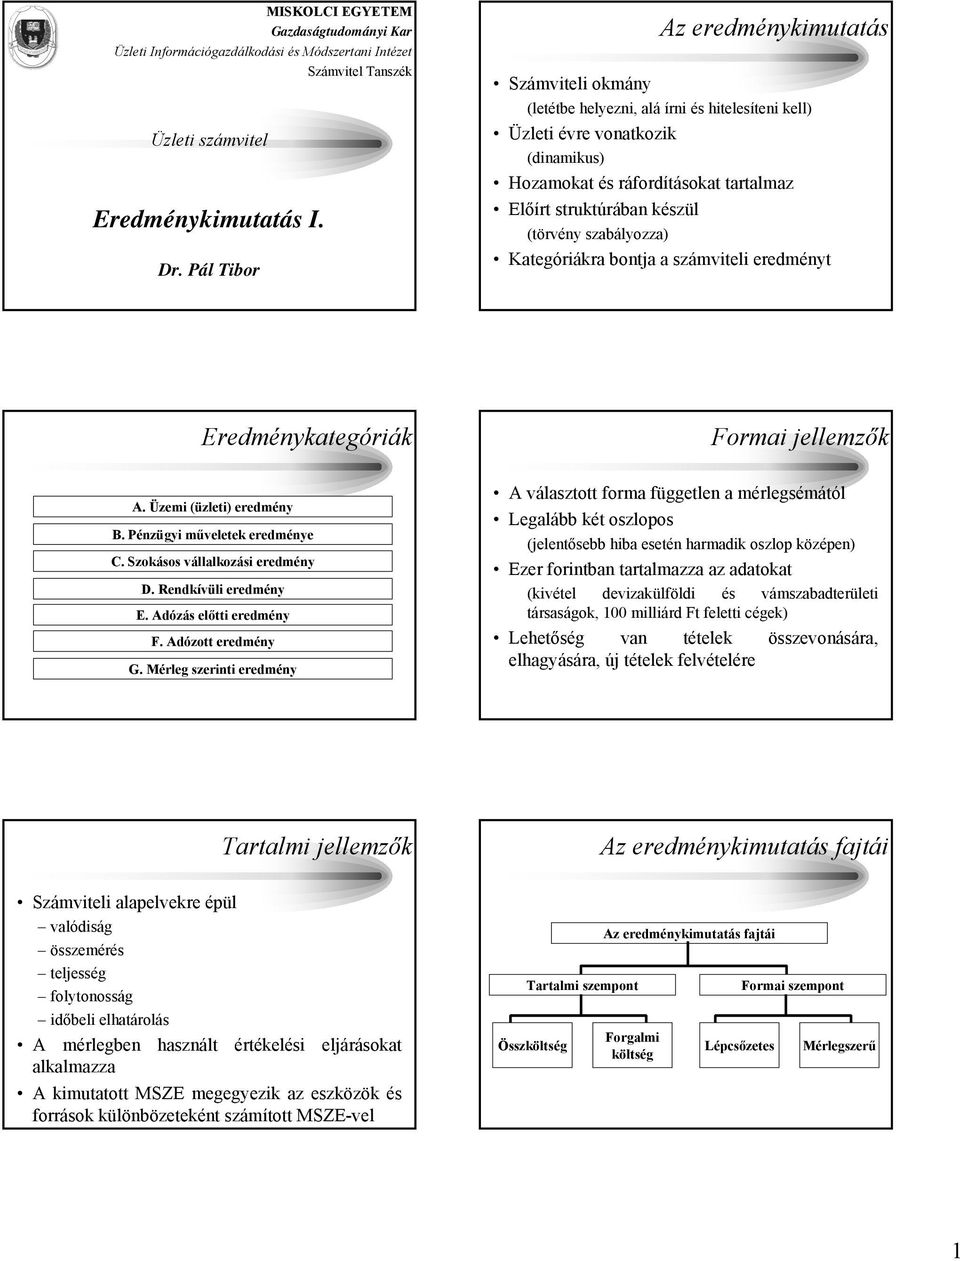 Az eredménykimutatás. Eredménykimutatás I. Eredménykategóriák. Formai  jellemzők. Tartalmi jellemzők. Az eredménykimutatás fajtái. - PDF Ingyenes  letöltés